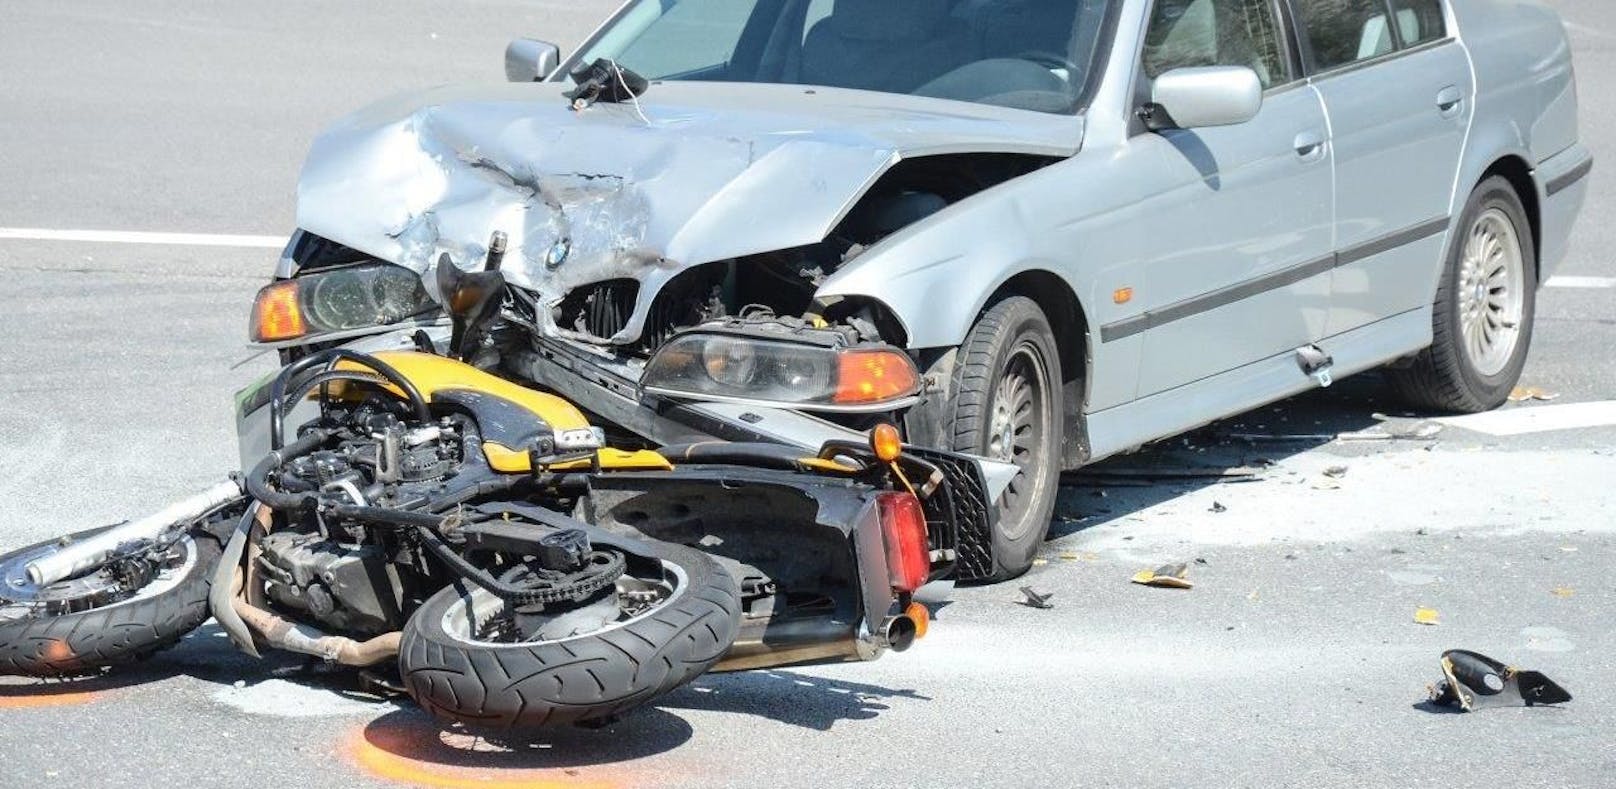 Schwerer Unfall: Motorrad frontal gegen Auto